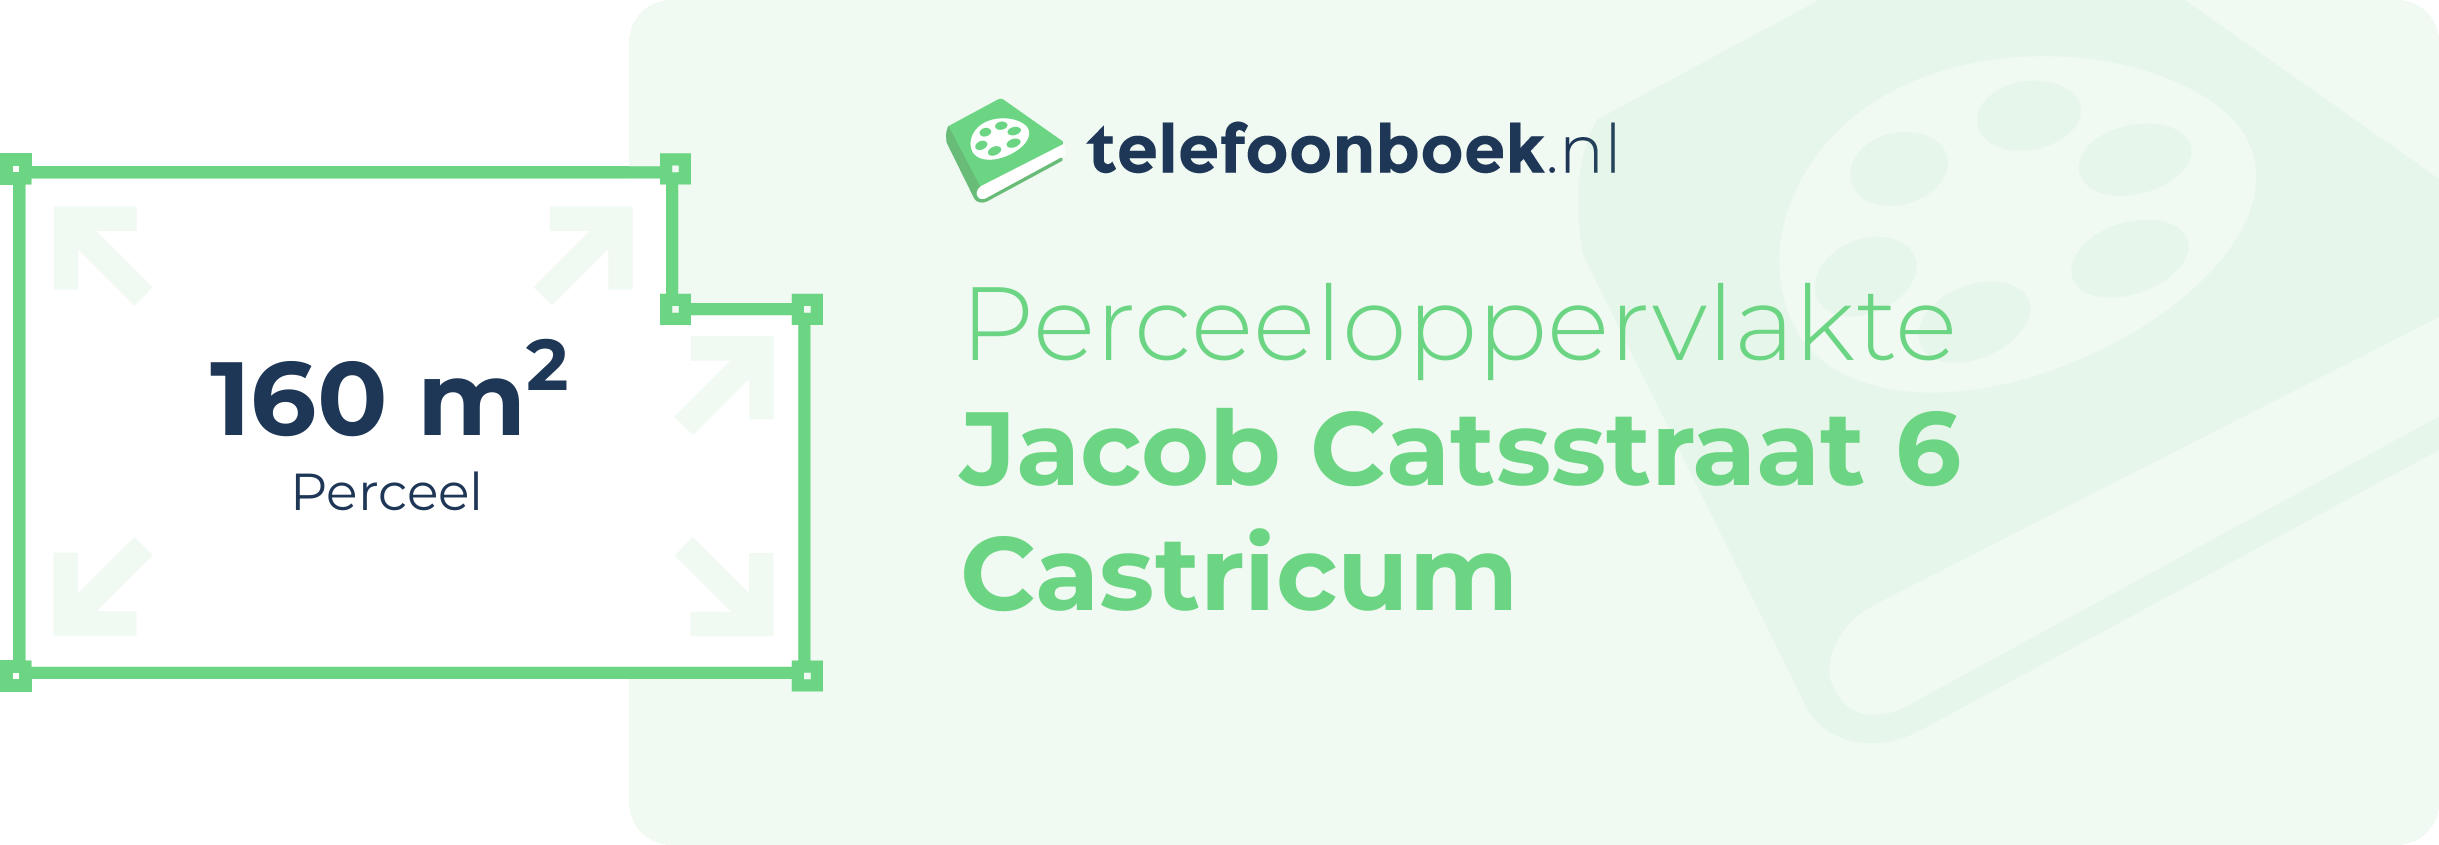 Perceeloppervlakte Jacob Catsstraat 6 Castricum